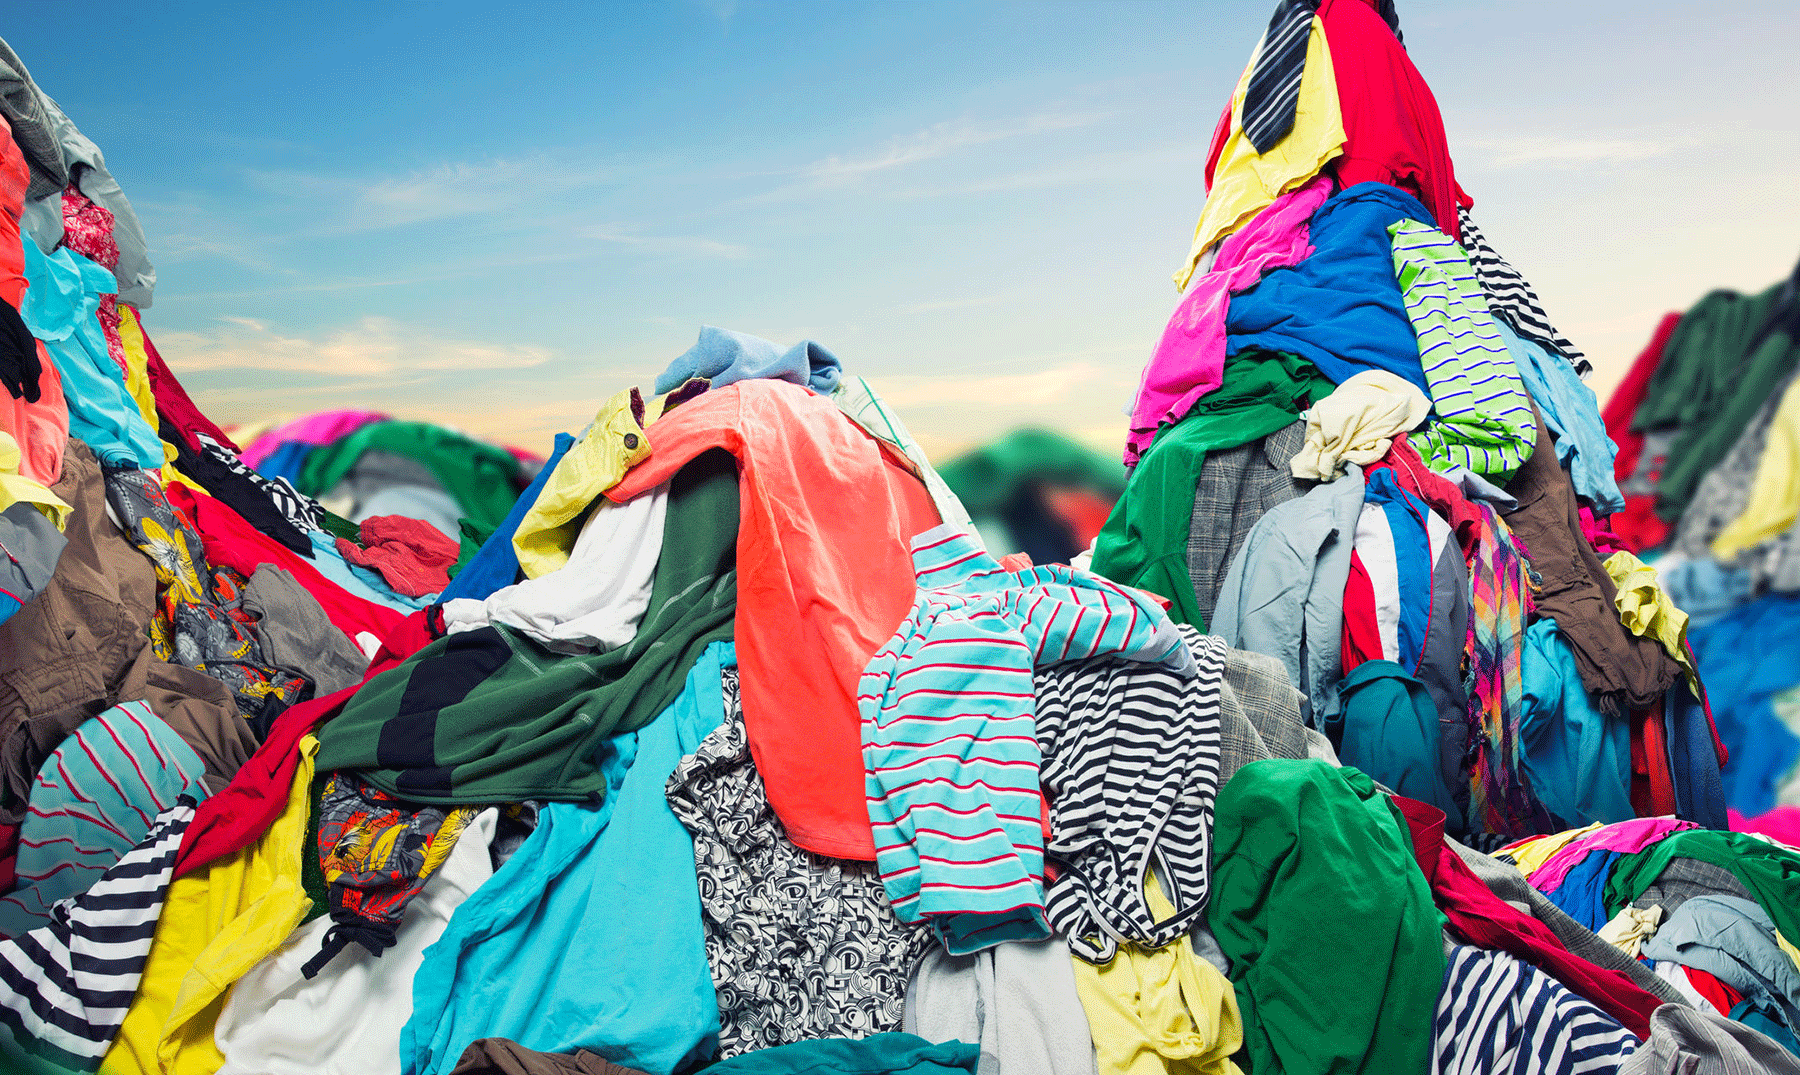 Reciclaje de ropa: ¿Qué hacer con la ropa que no usas? - Ecologia Util